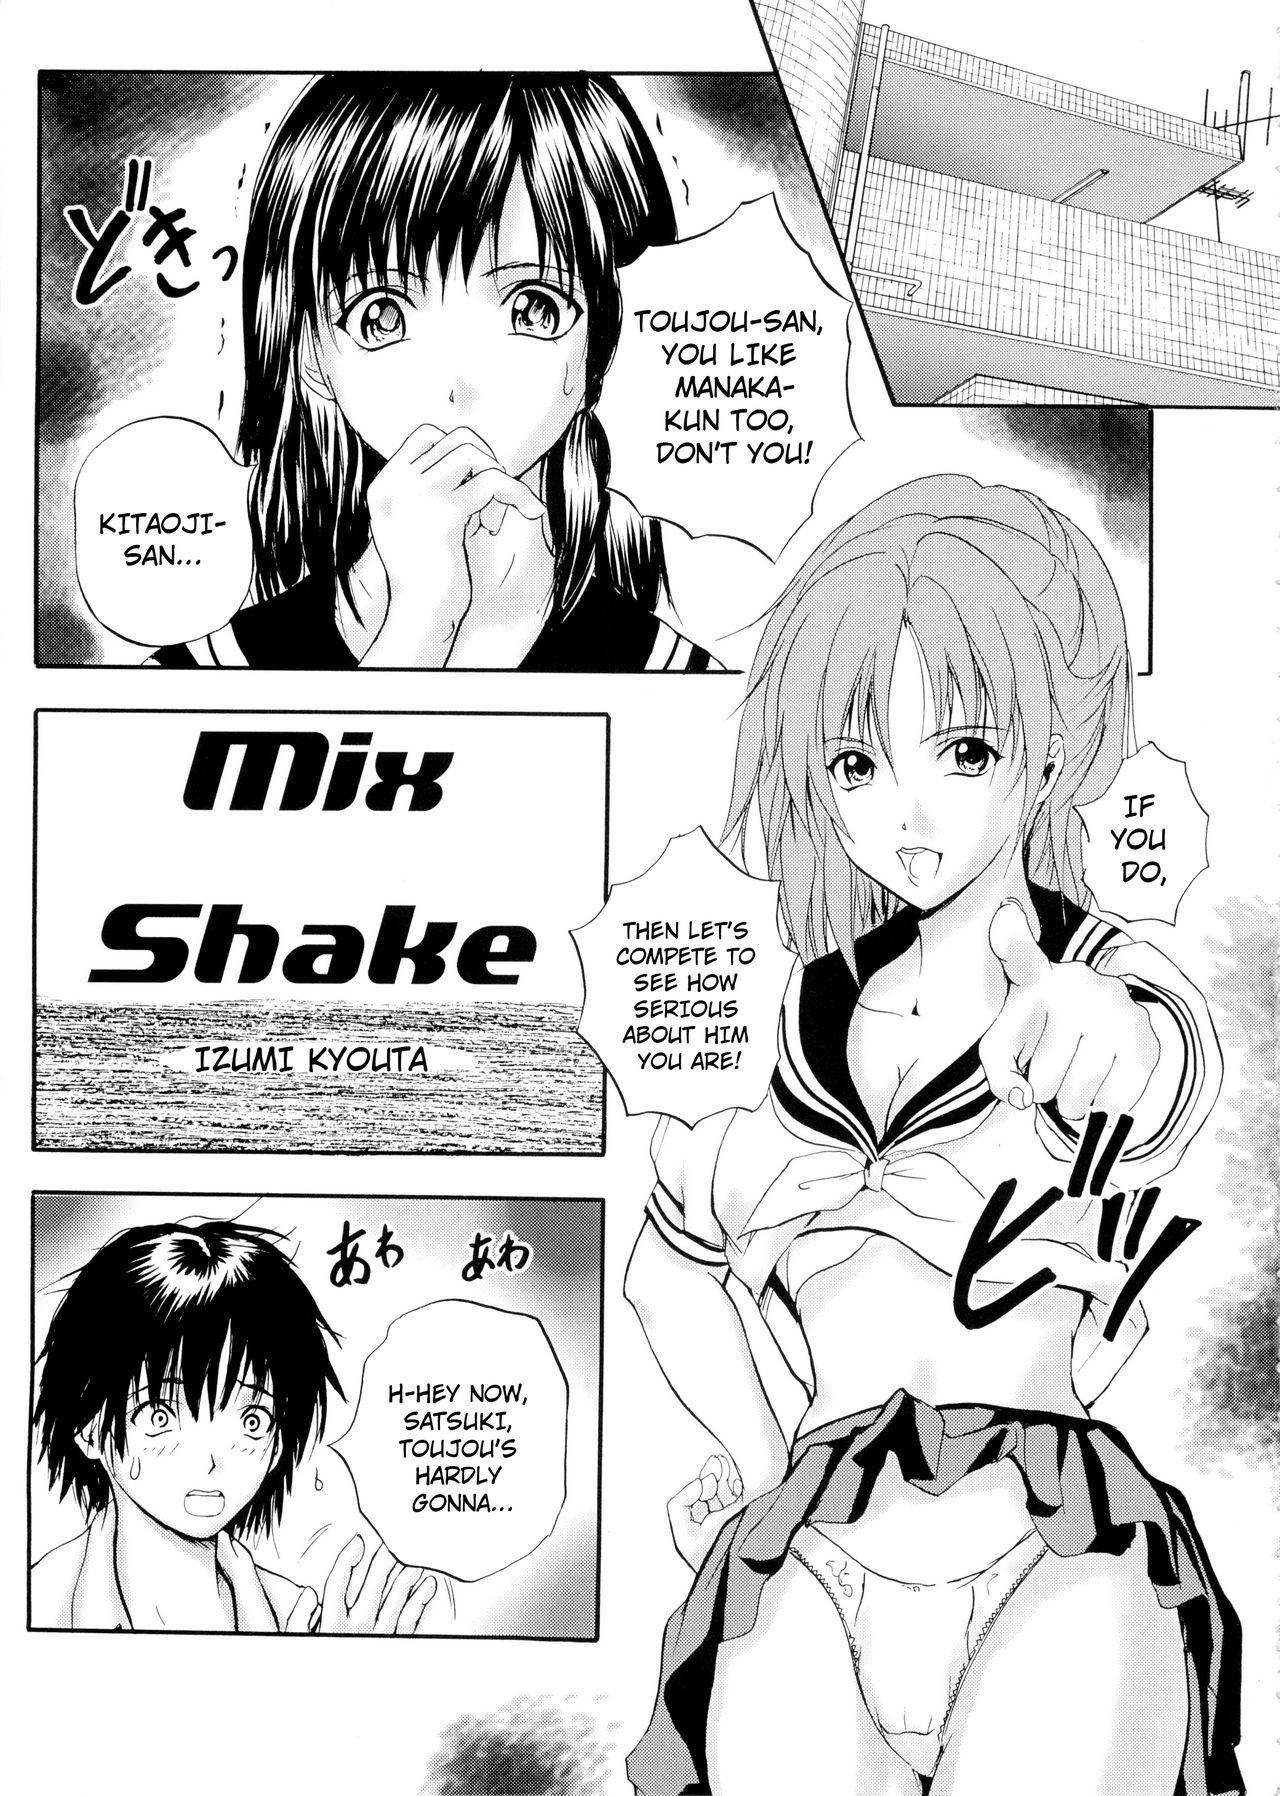 Mix Shake 3